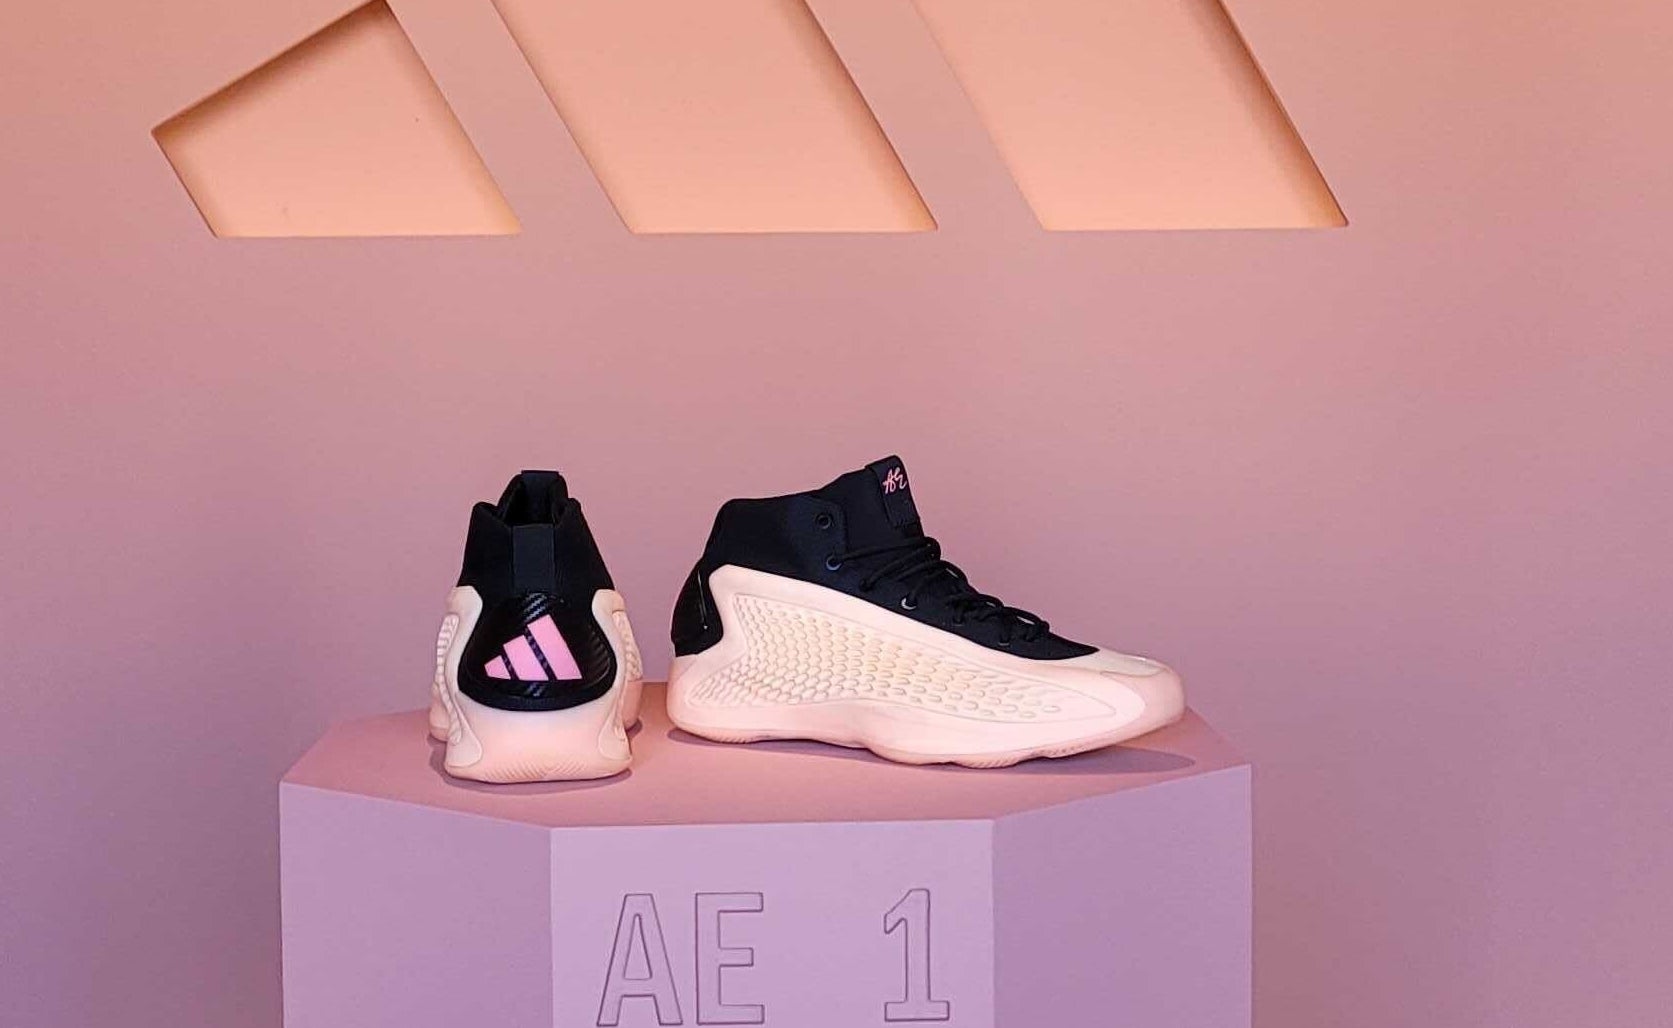 Adidas Anthony Edwards 1 : r/BBallShoes